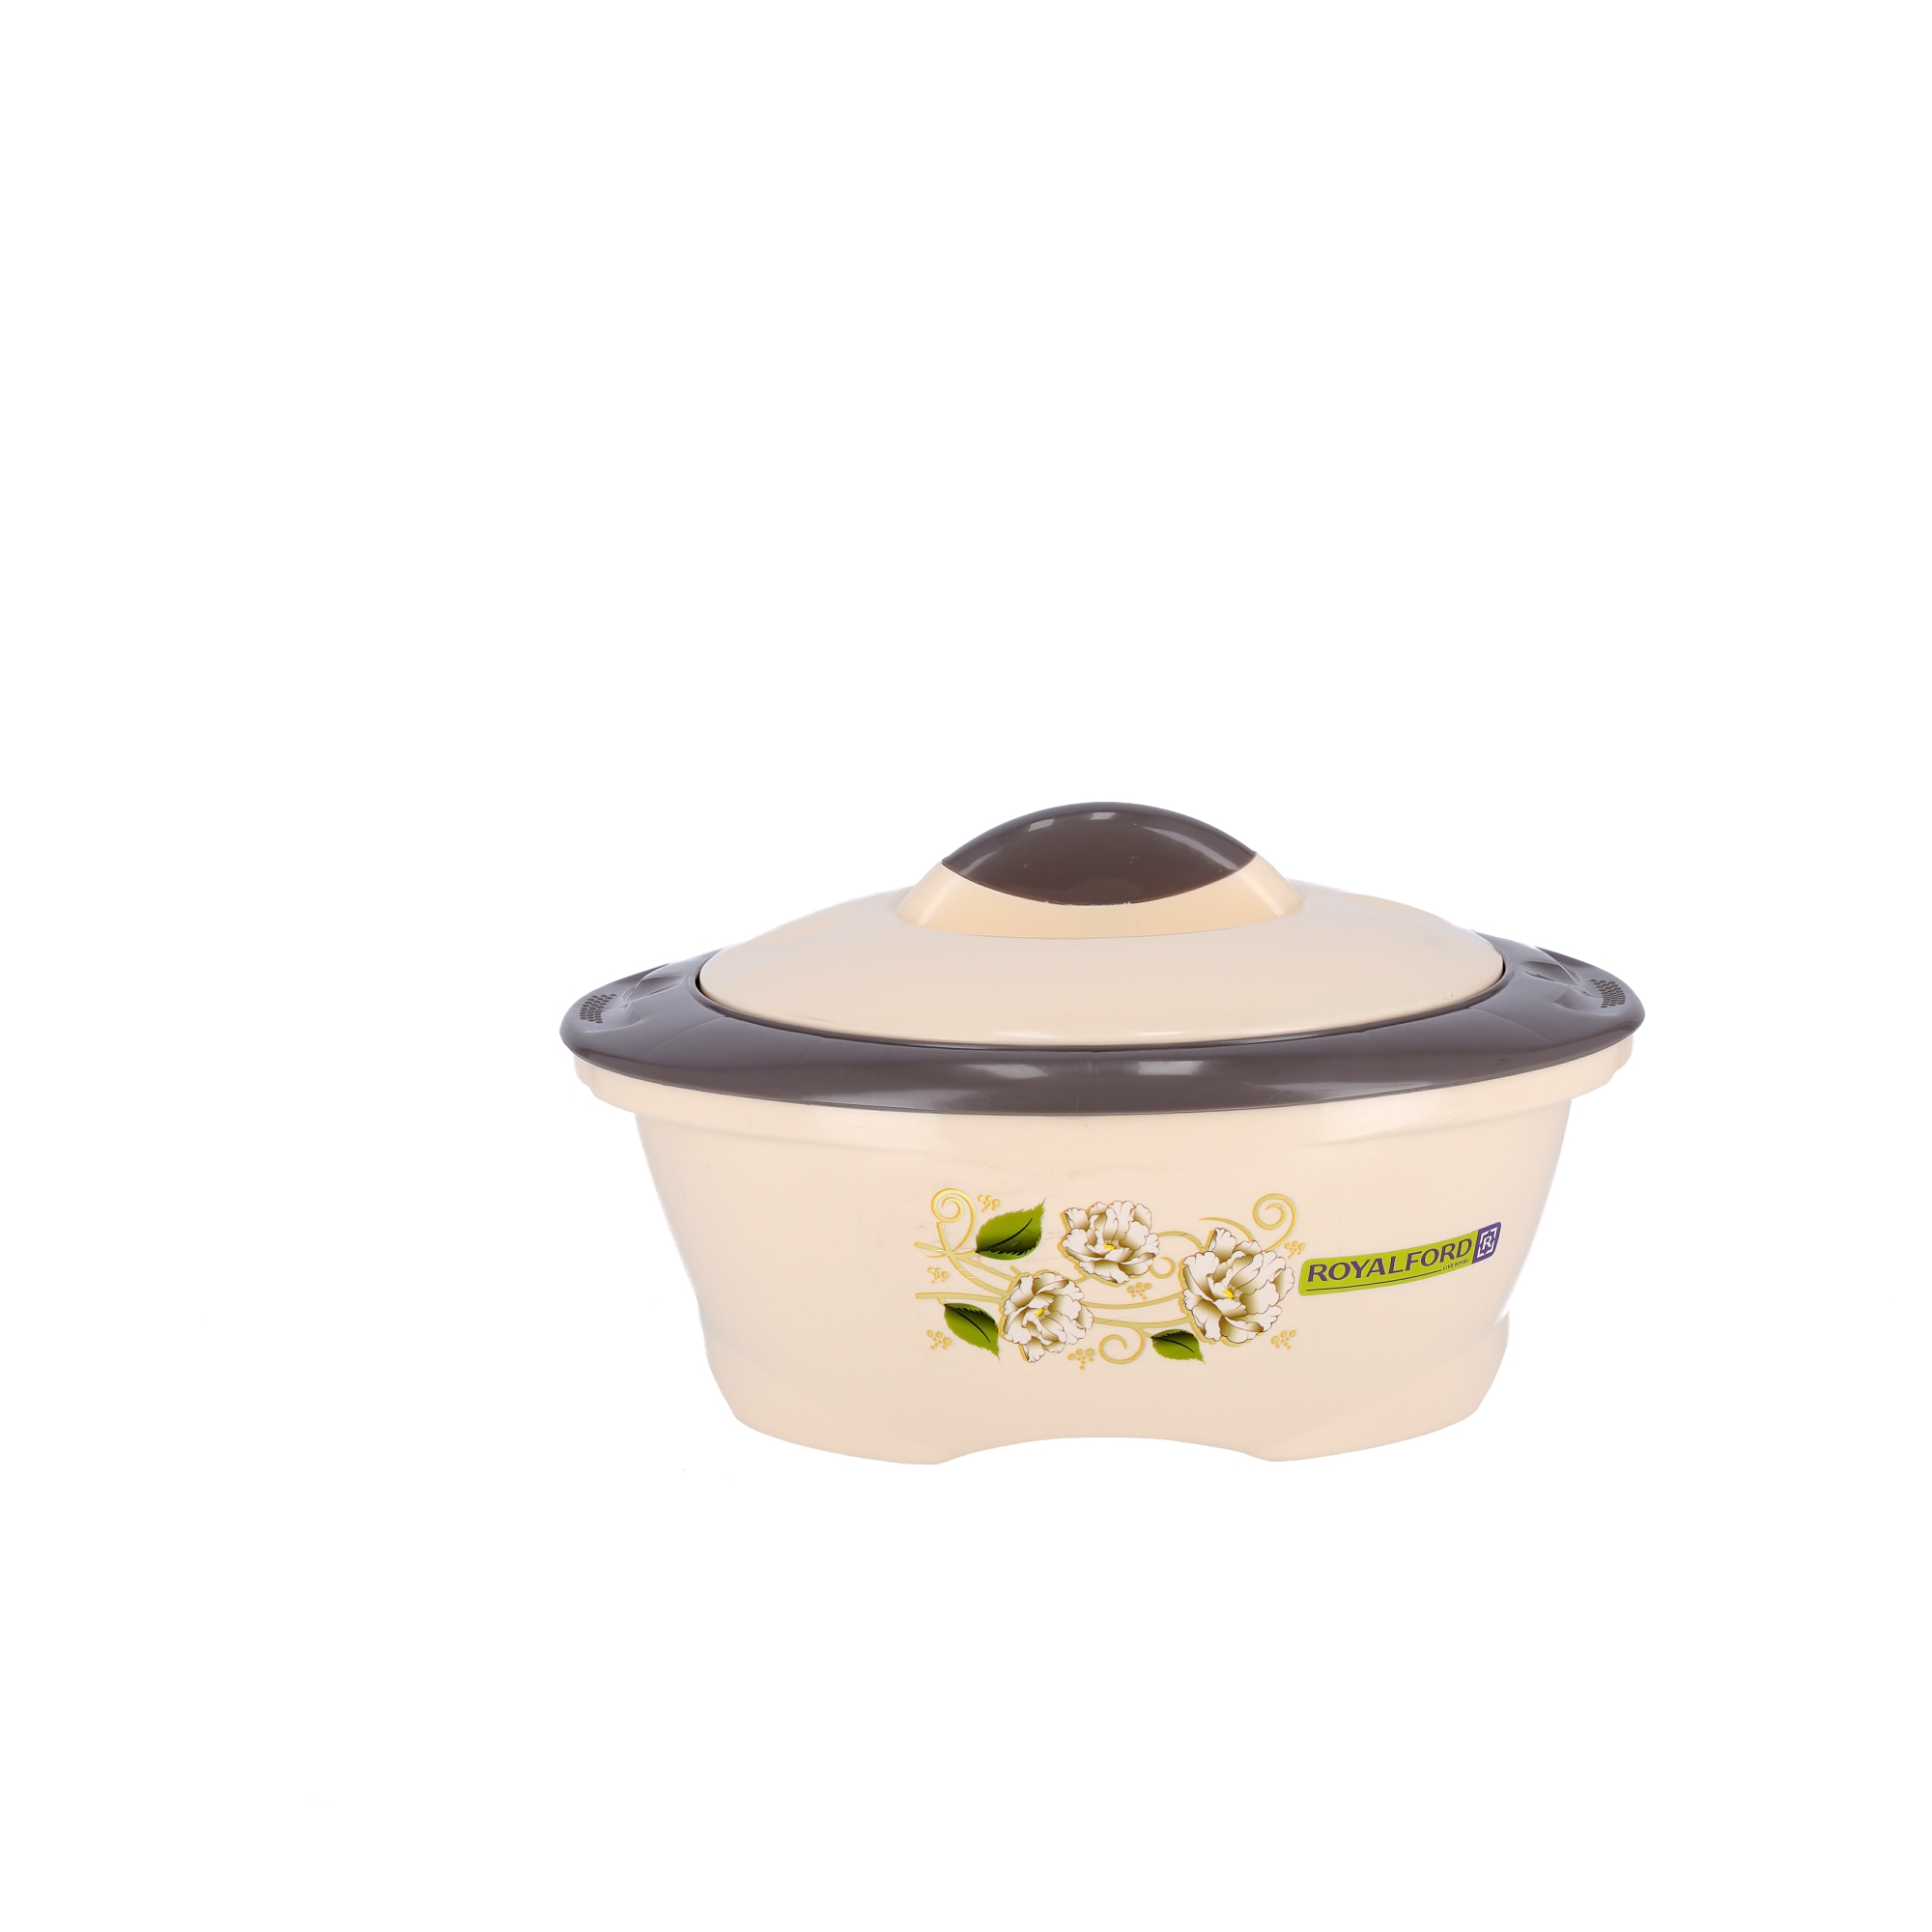 أواني سيرامكية 3 في 1 تحفظ الحرارة | Royalford Casserole Dish Hot Pot Set